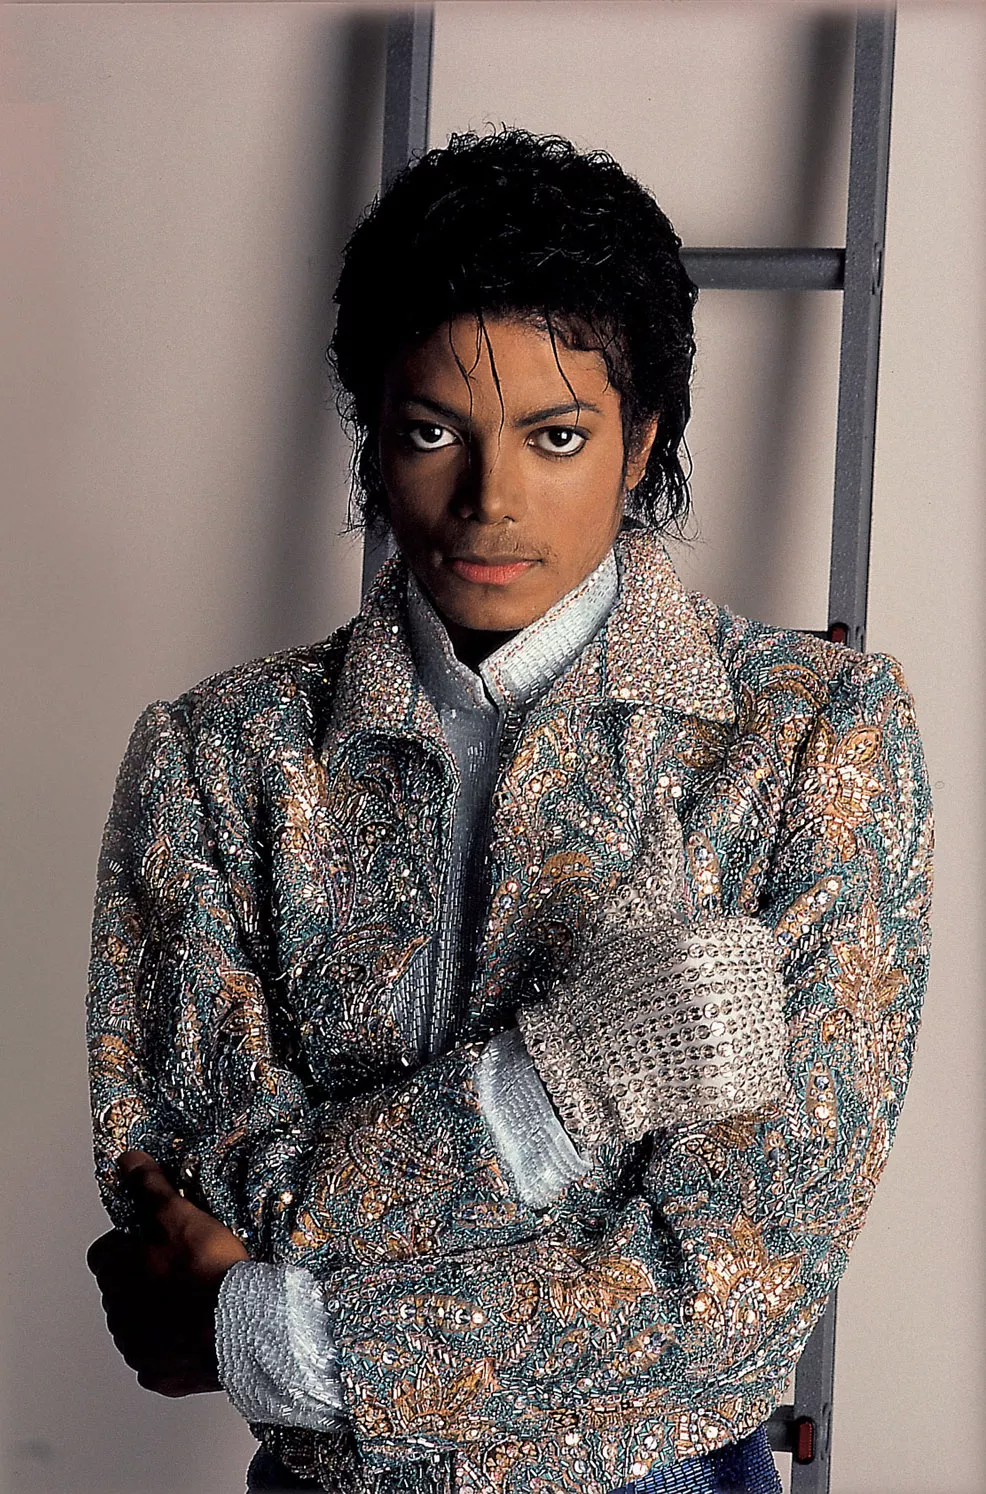 Michael Jackson mindes i aften på Rådhuspladsen